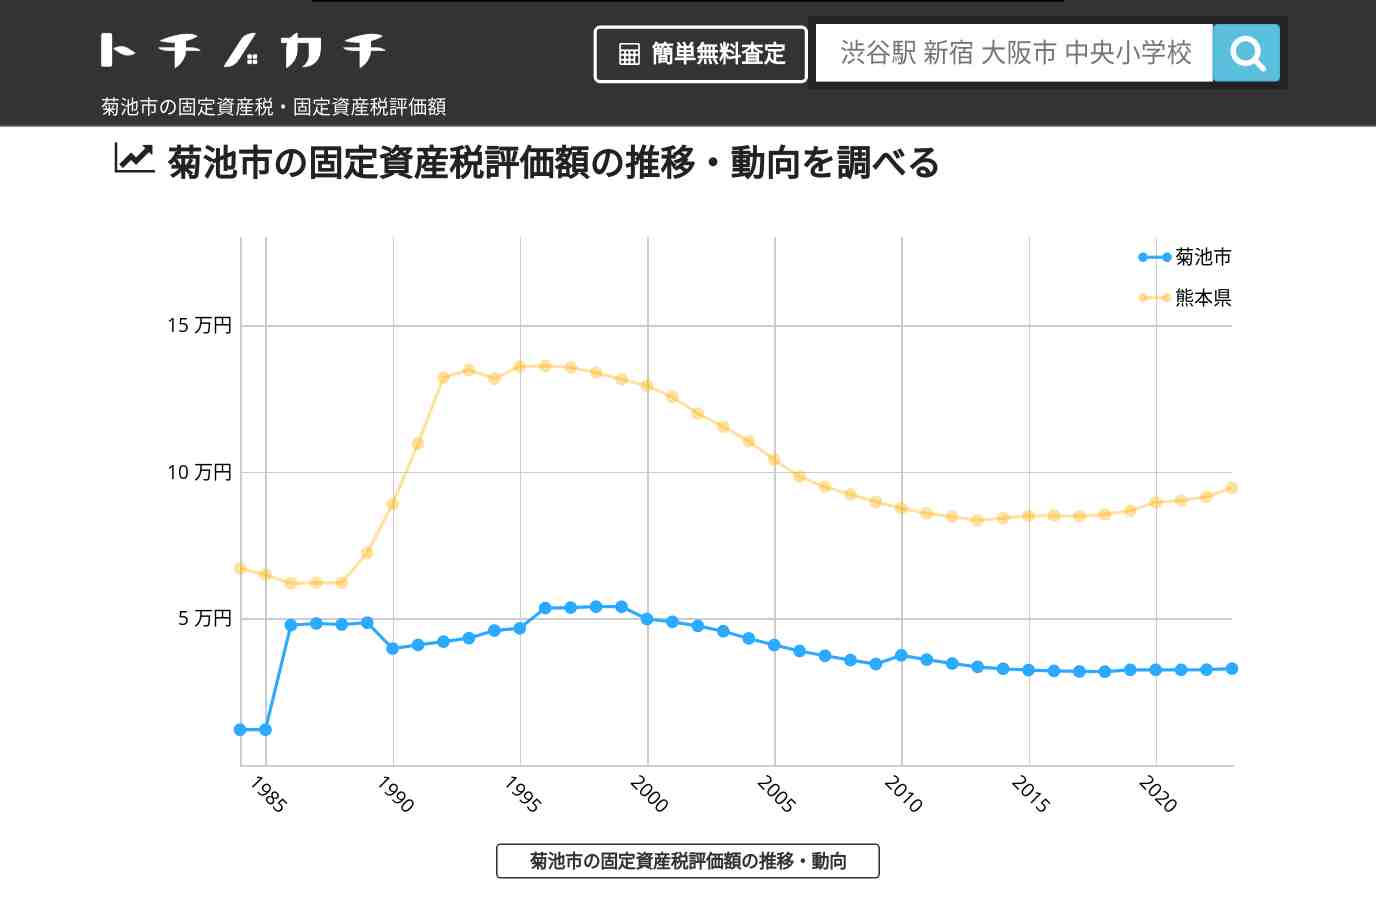 迫水小学校(熊本県 菊池市)周辺の固定資産税・固定資産税評価額 | トチノカチ